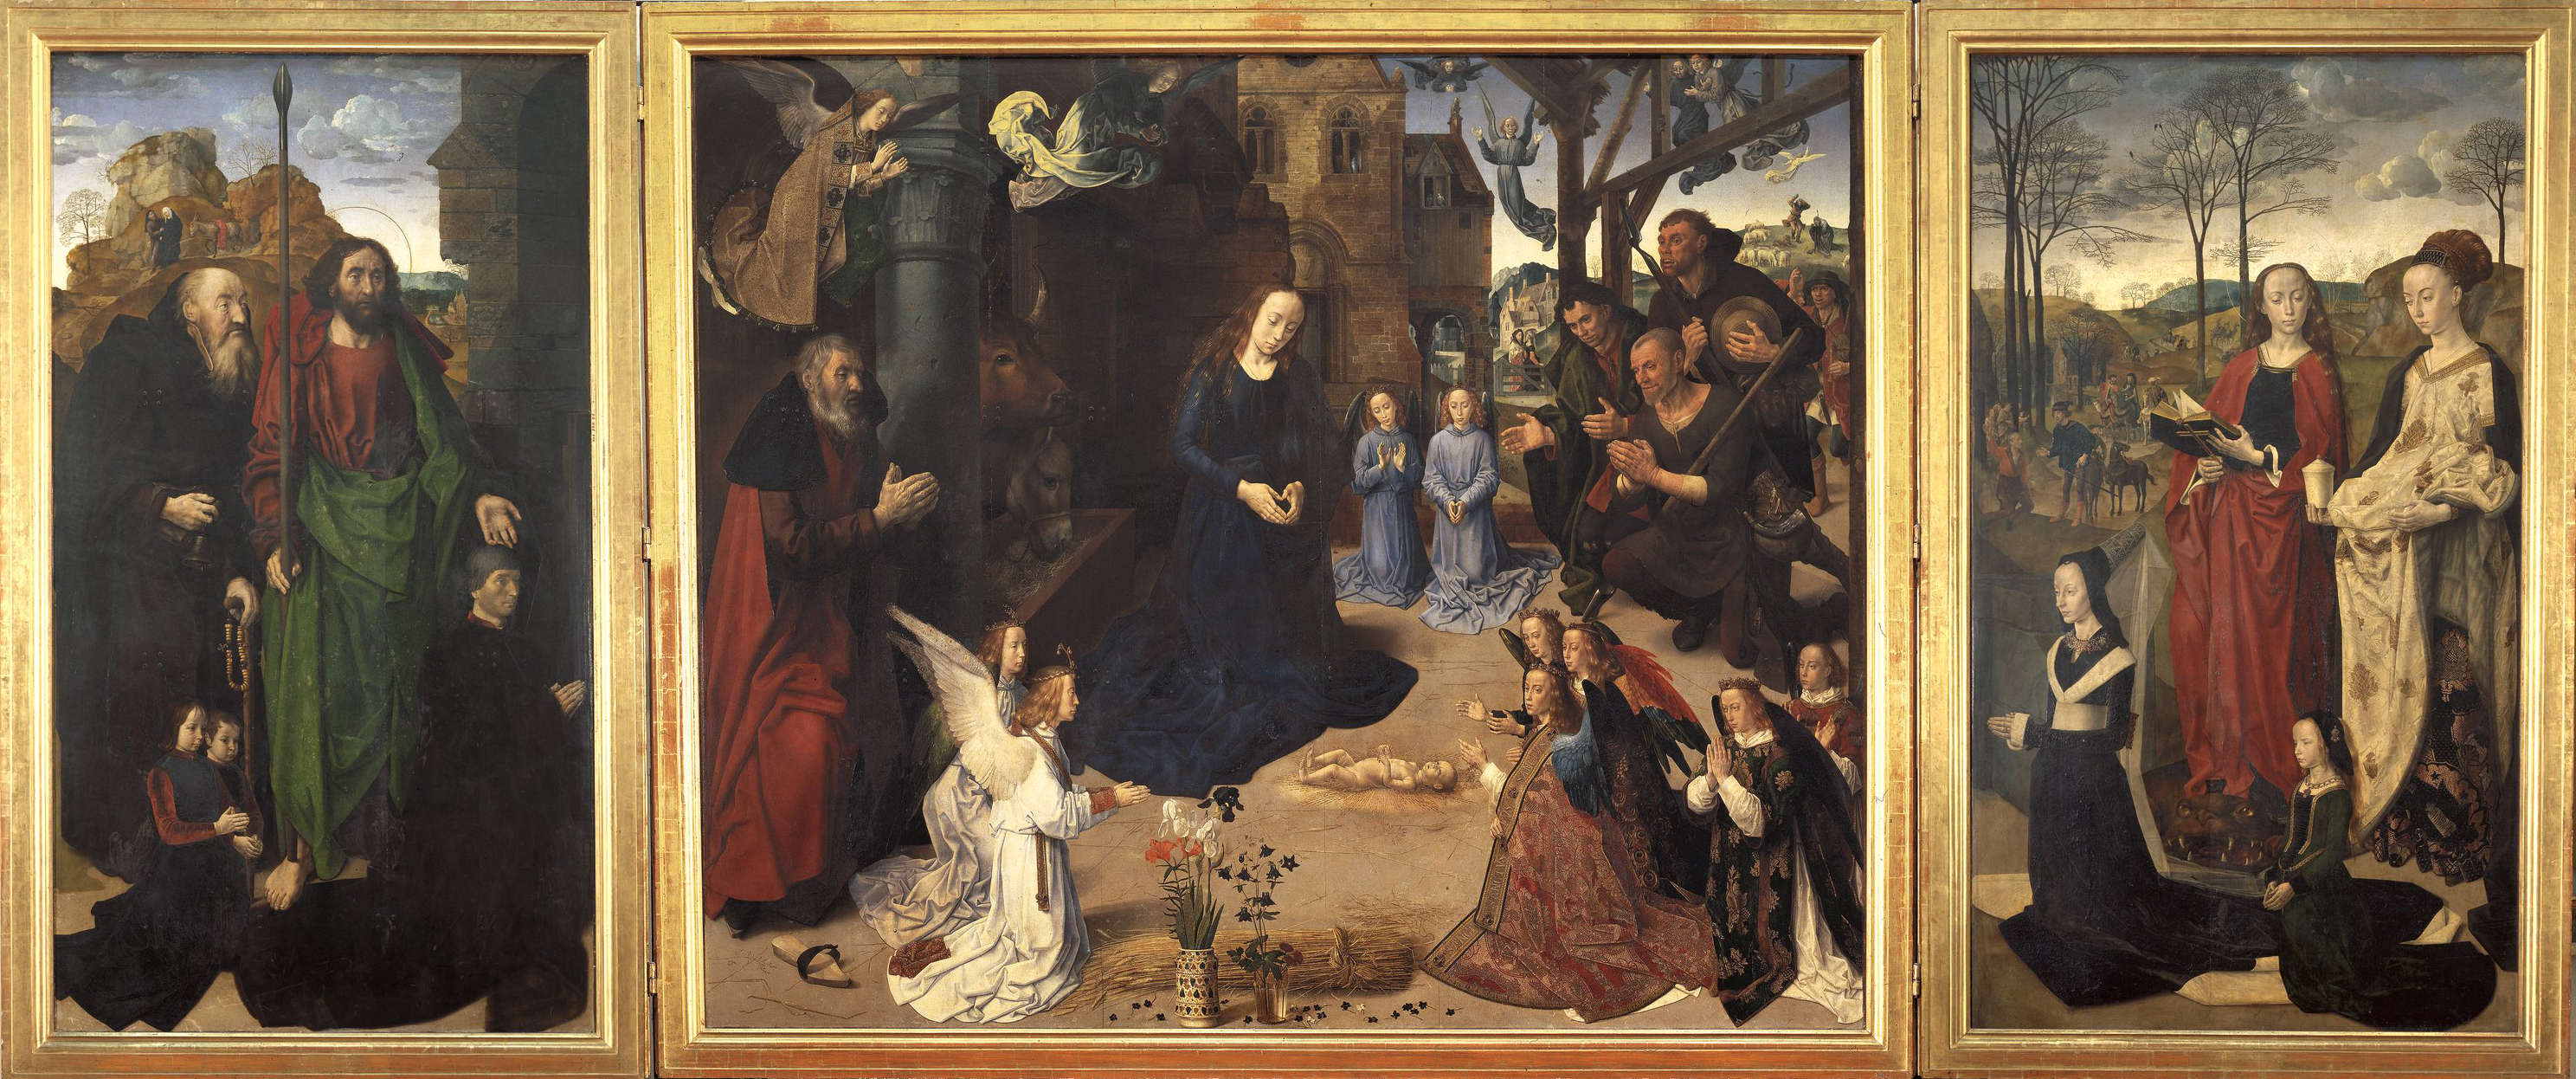 Hugo van der Goes, Trittico Portinari (1477-1478; olio su tavola, 253 x 608 cm; Firenze, Gallerie degli Uffizi)